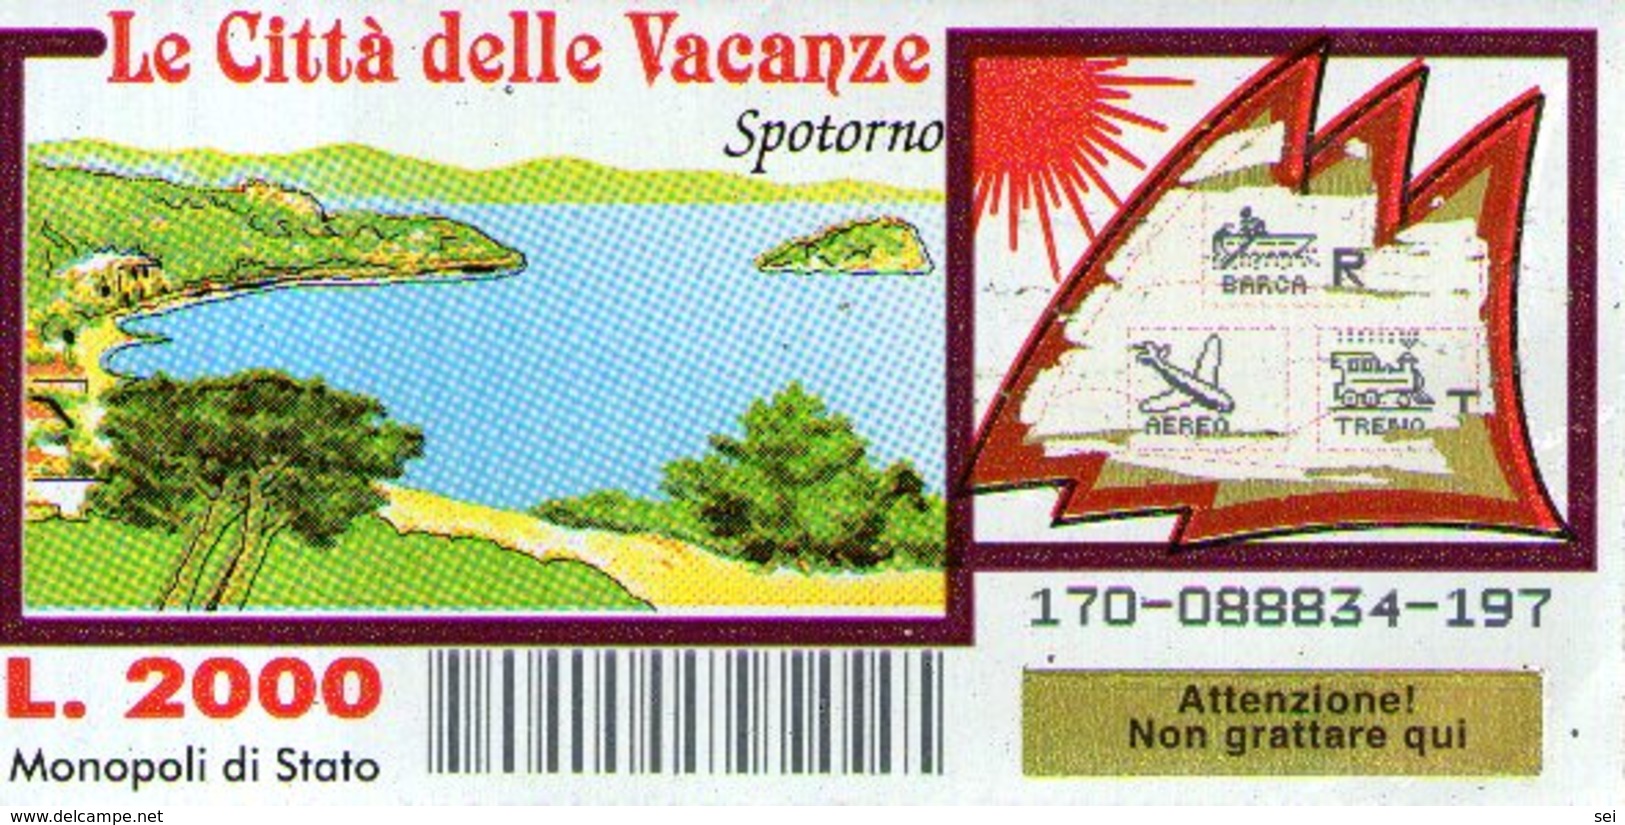 B 2375 - Gratta E Vinci, Le Città Delle Vacanze, Spotorno - Biglietti Della Lotteria